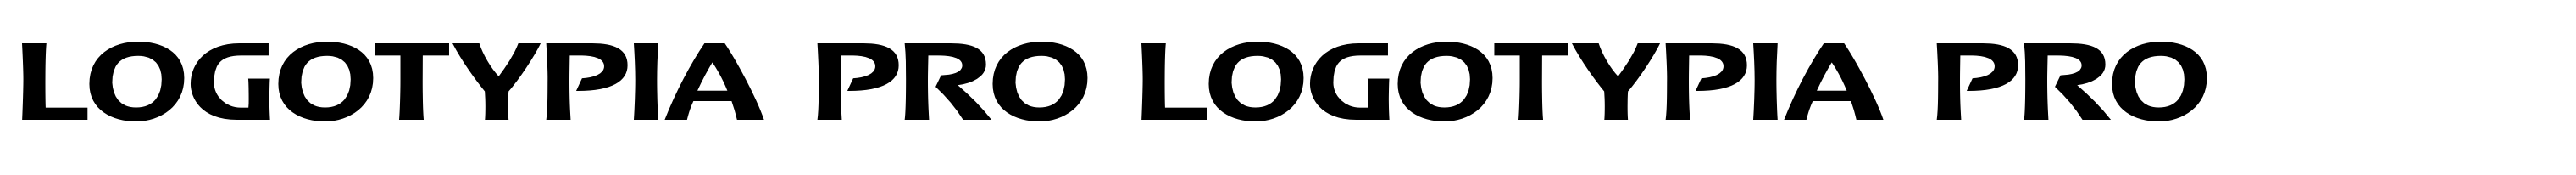 Logotypia Pro Logotypia Pro